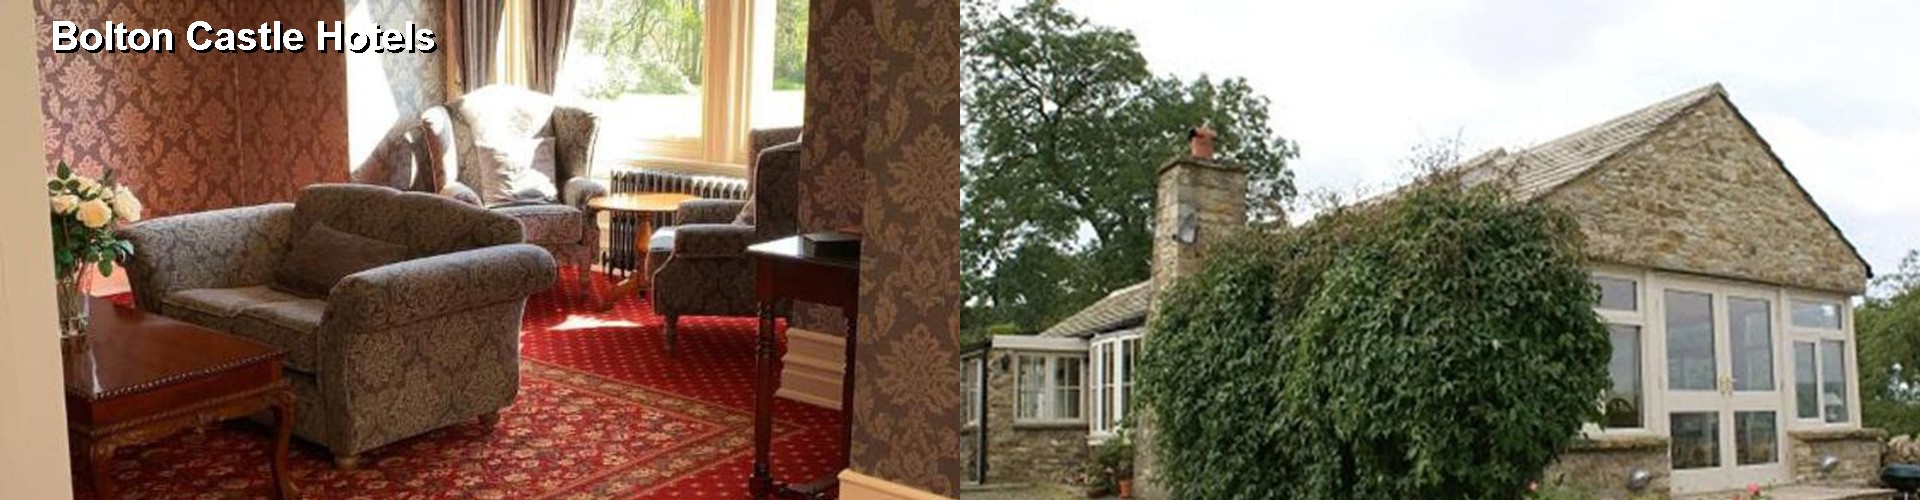 5 Best Hotels near Bolton Castle